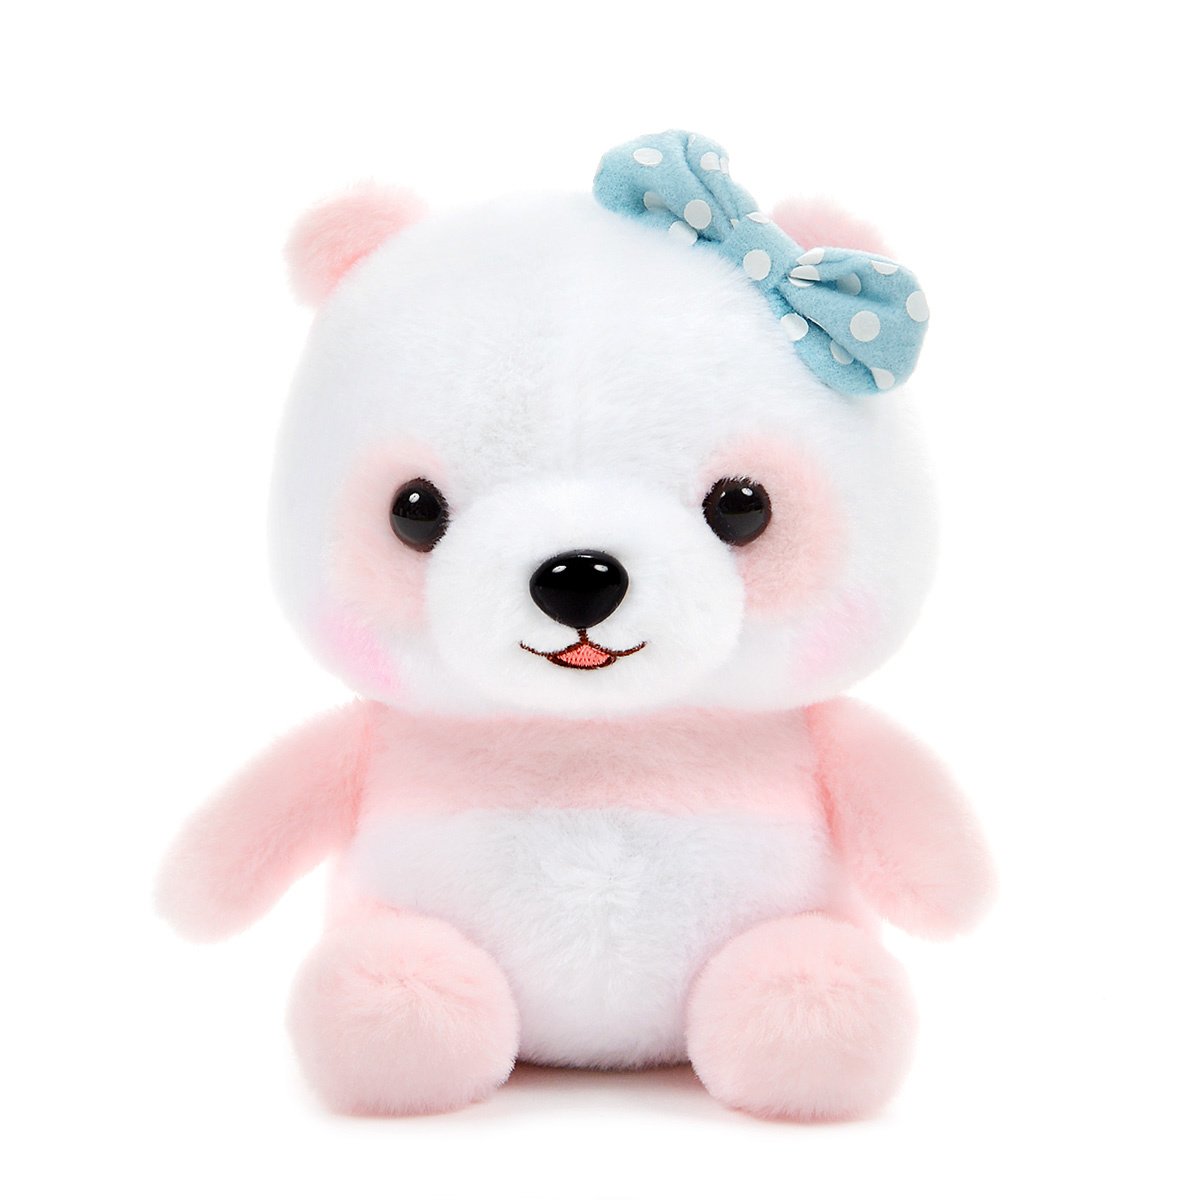 Plush Panda, Amuse, Honwaka Panda Baby, Yume Peach, White / Pink, 6 Inches